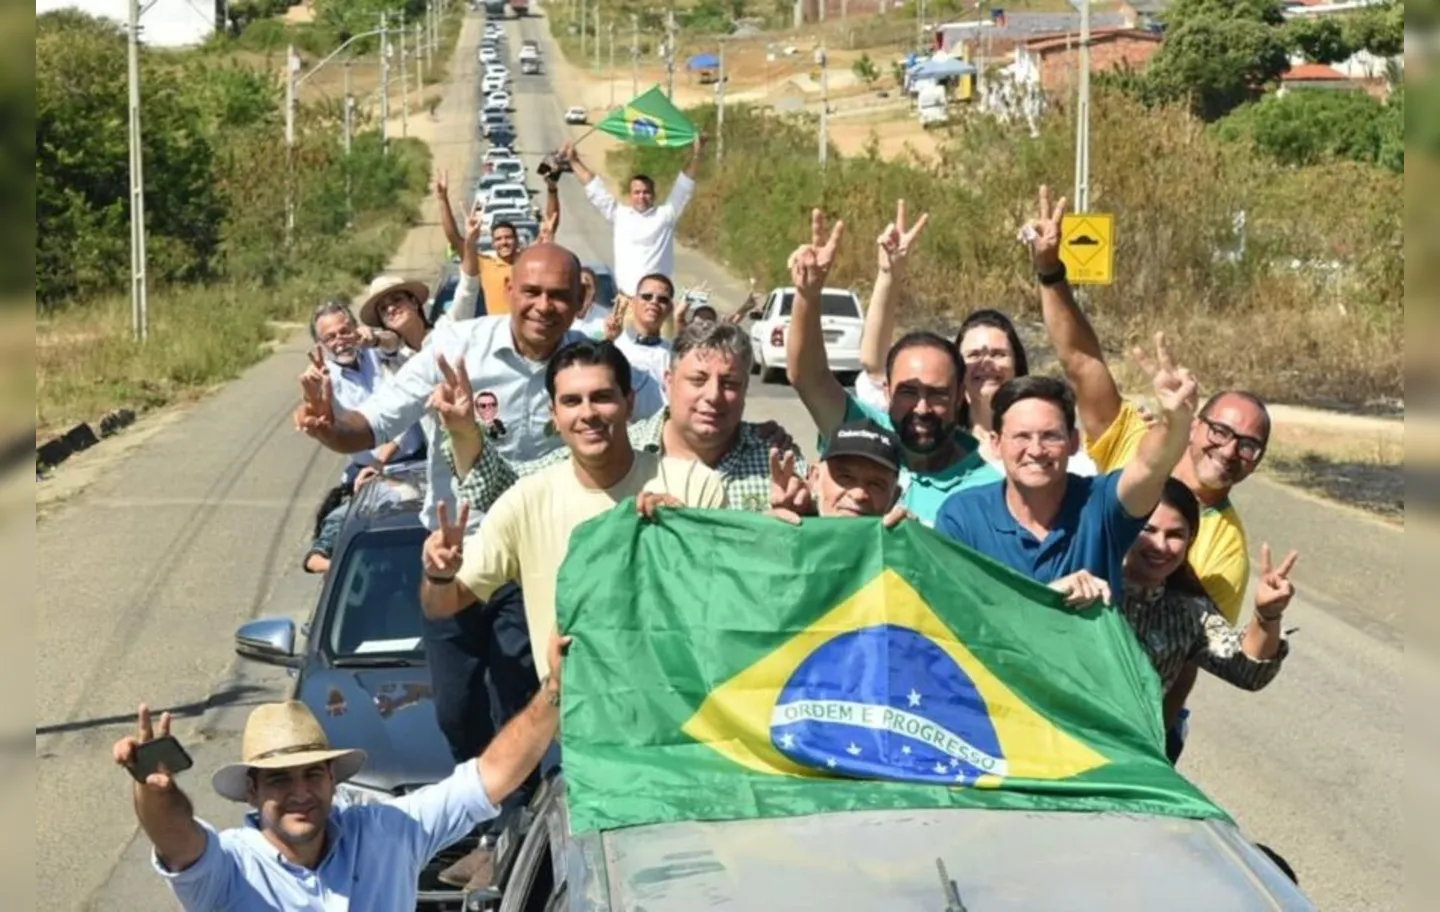 Candidato apoiado por Bolsonaro participa de carreata em Itapetinga